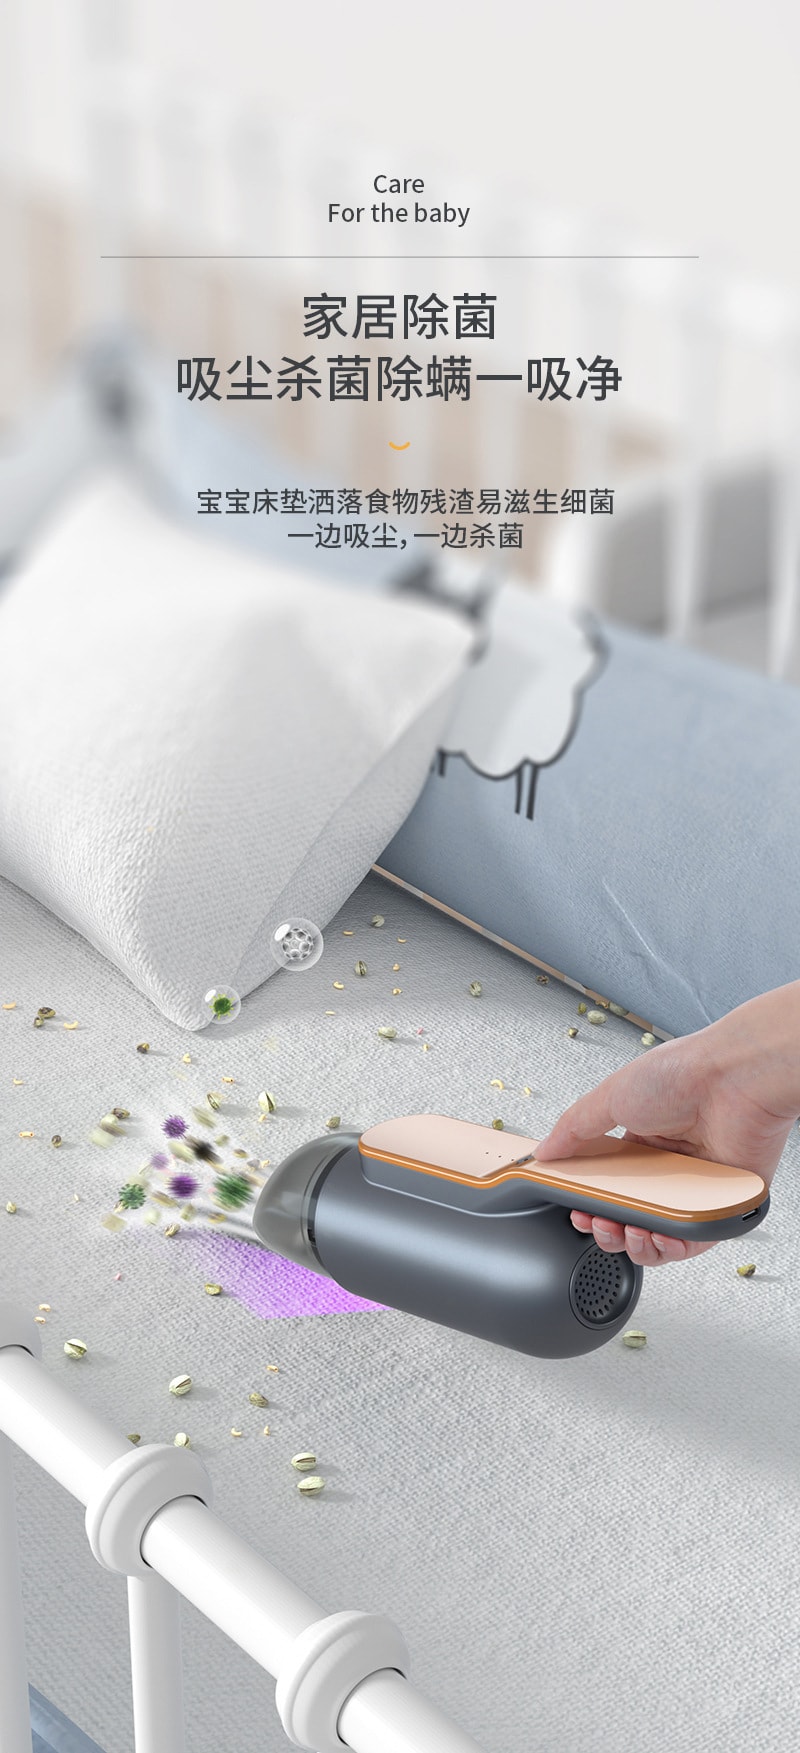 中国直邮 Coopever 小型无线吸尘器大吸力紫外线杀菌 家用车载便携式迷你吸尘器 蓝色